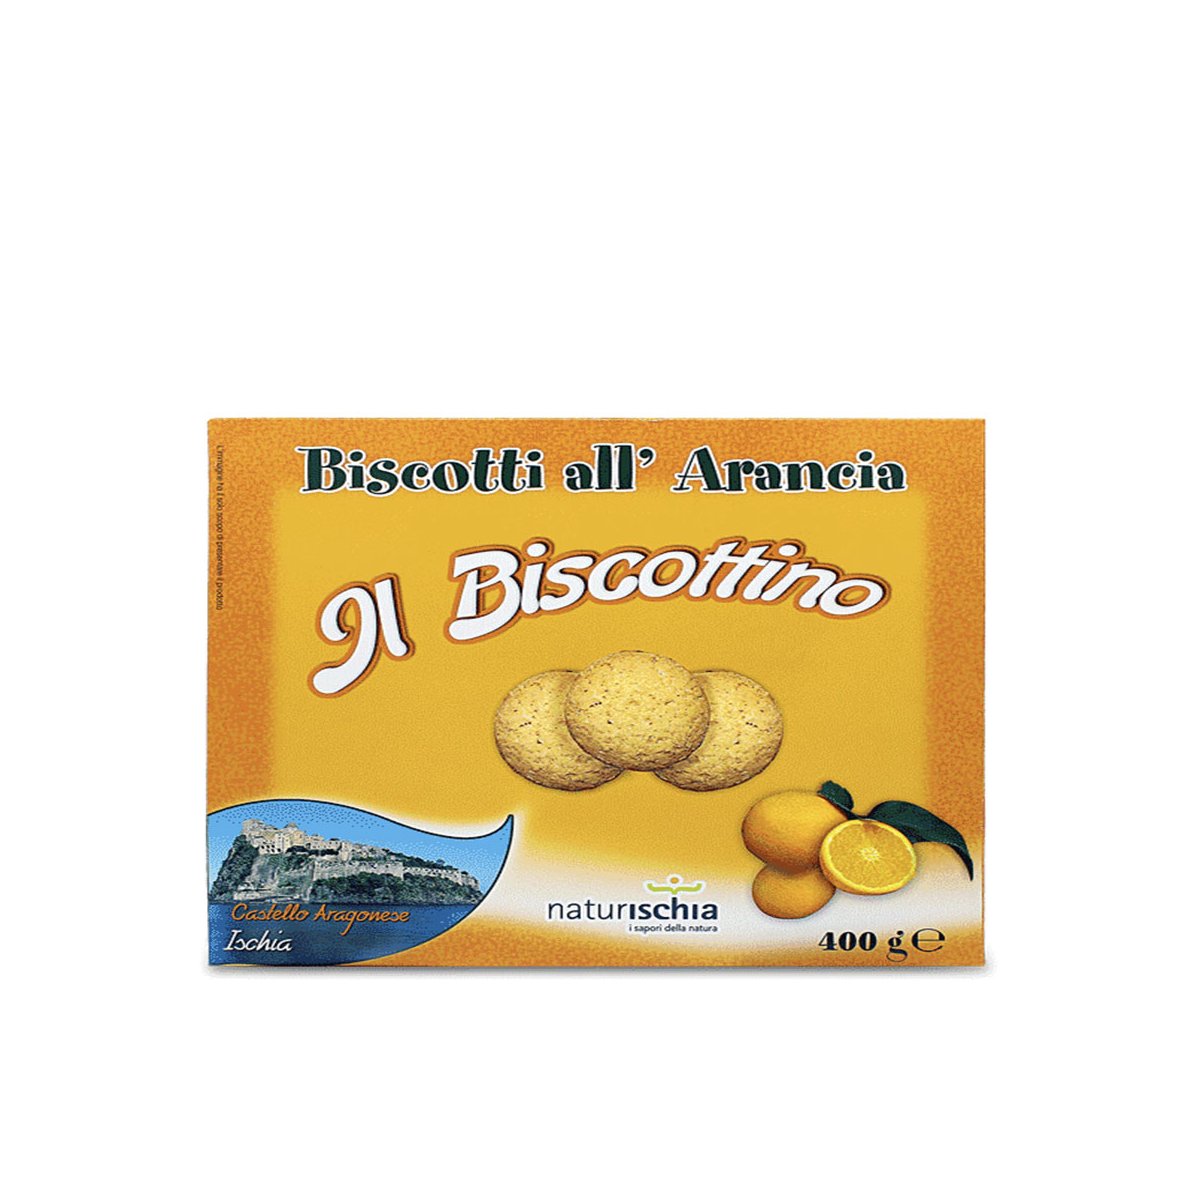 Biscotti all'arancia "Il Biscottino" 400 gr